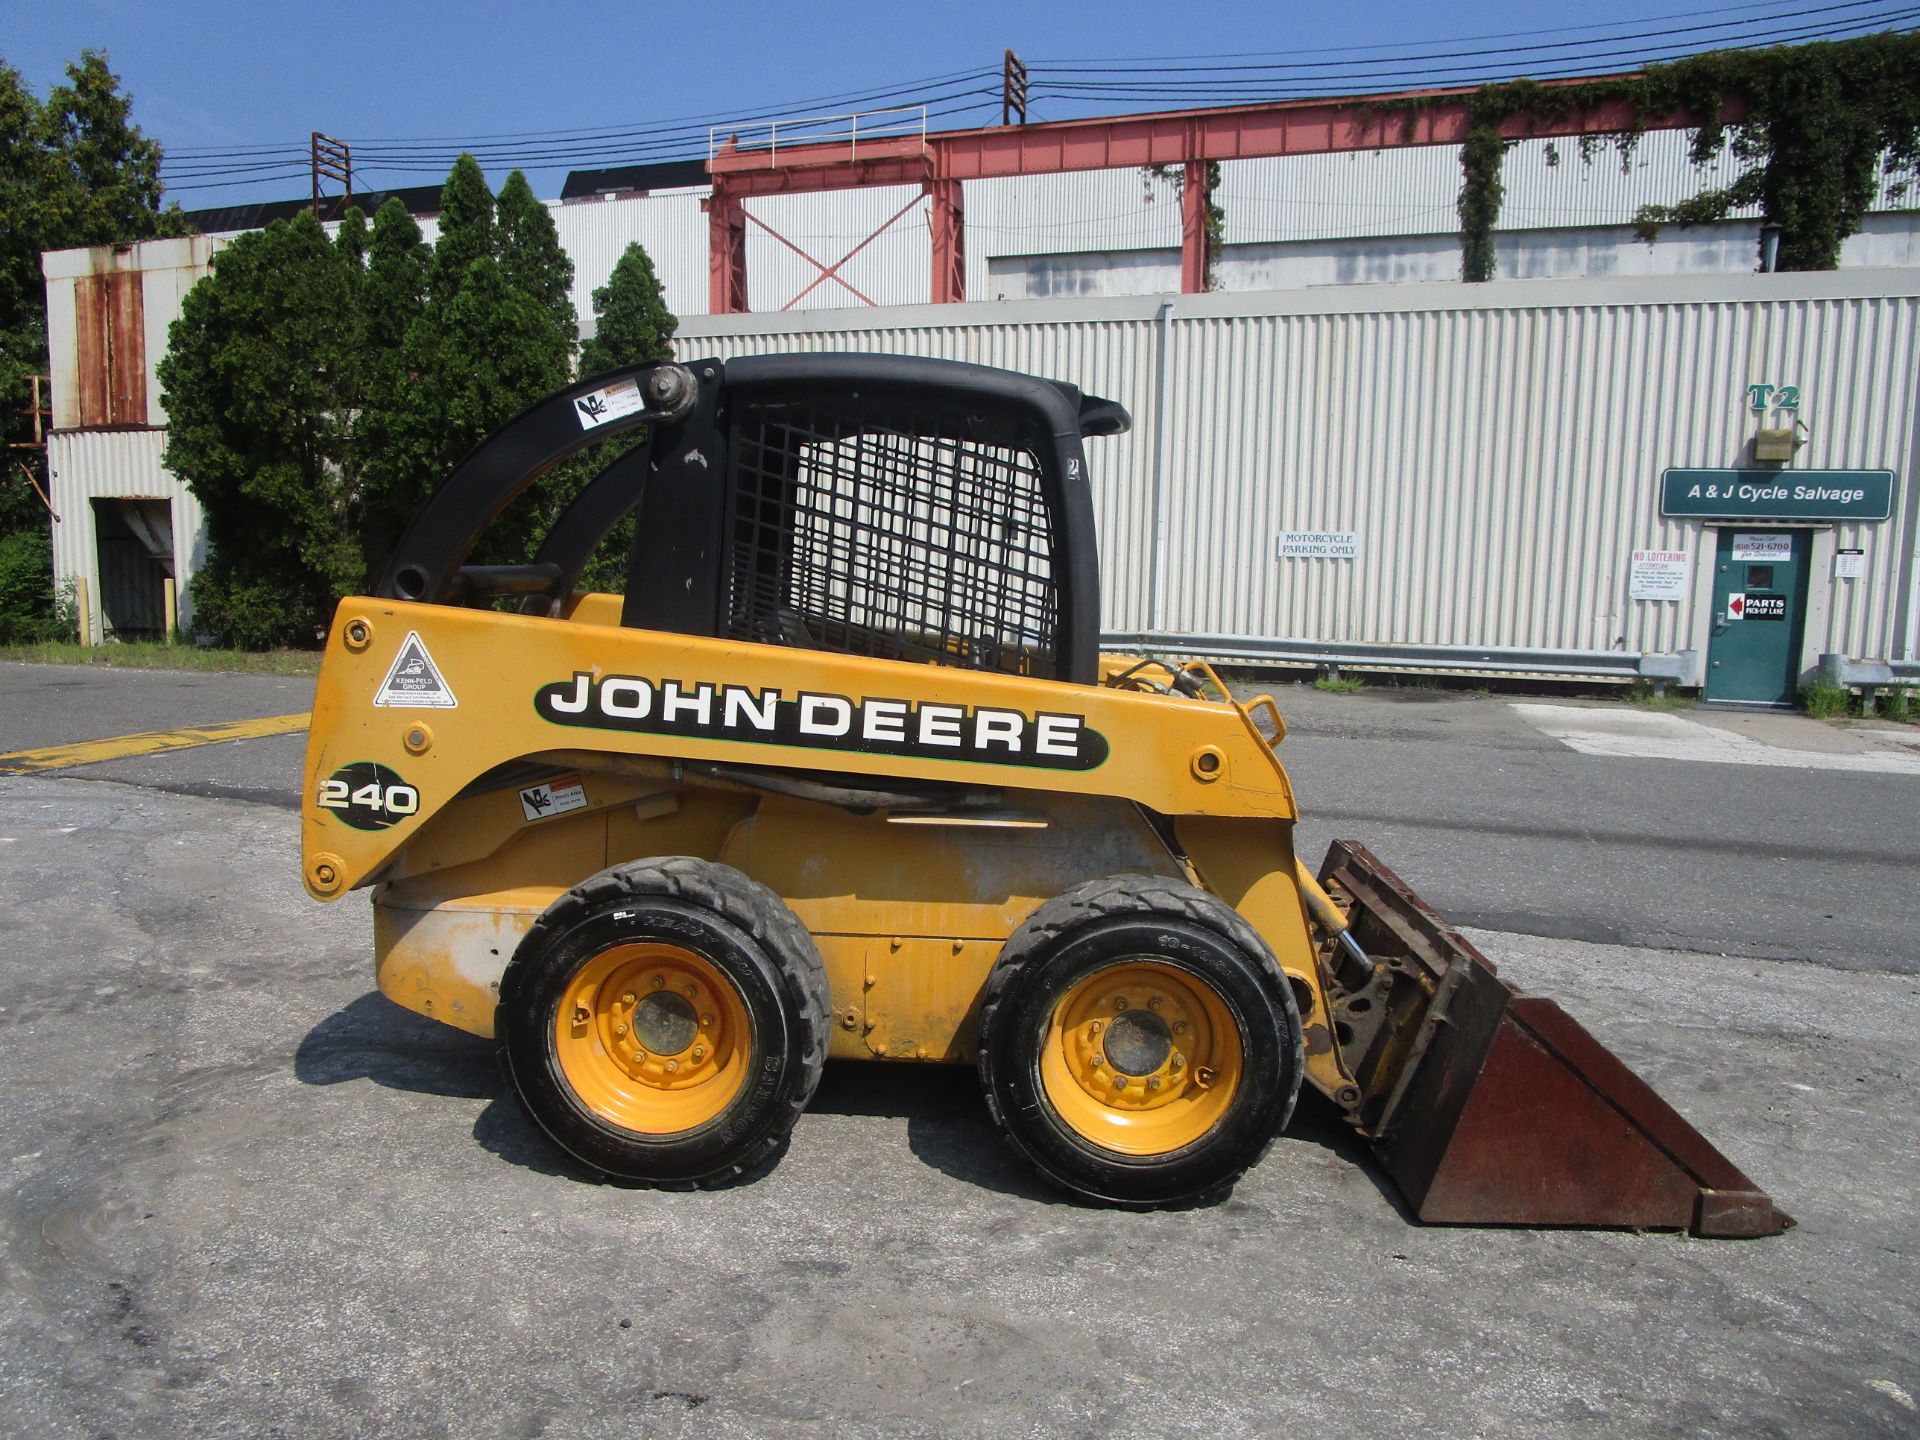 John Deere 240 Skid Steer Loader - Image 2 of 11